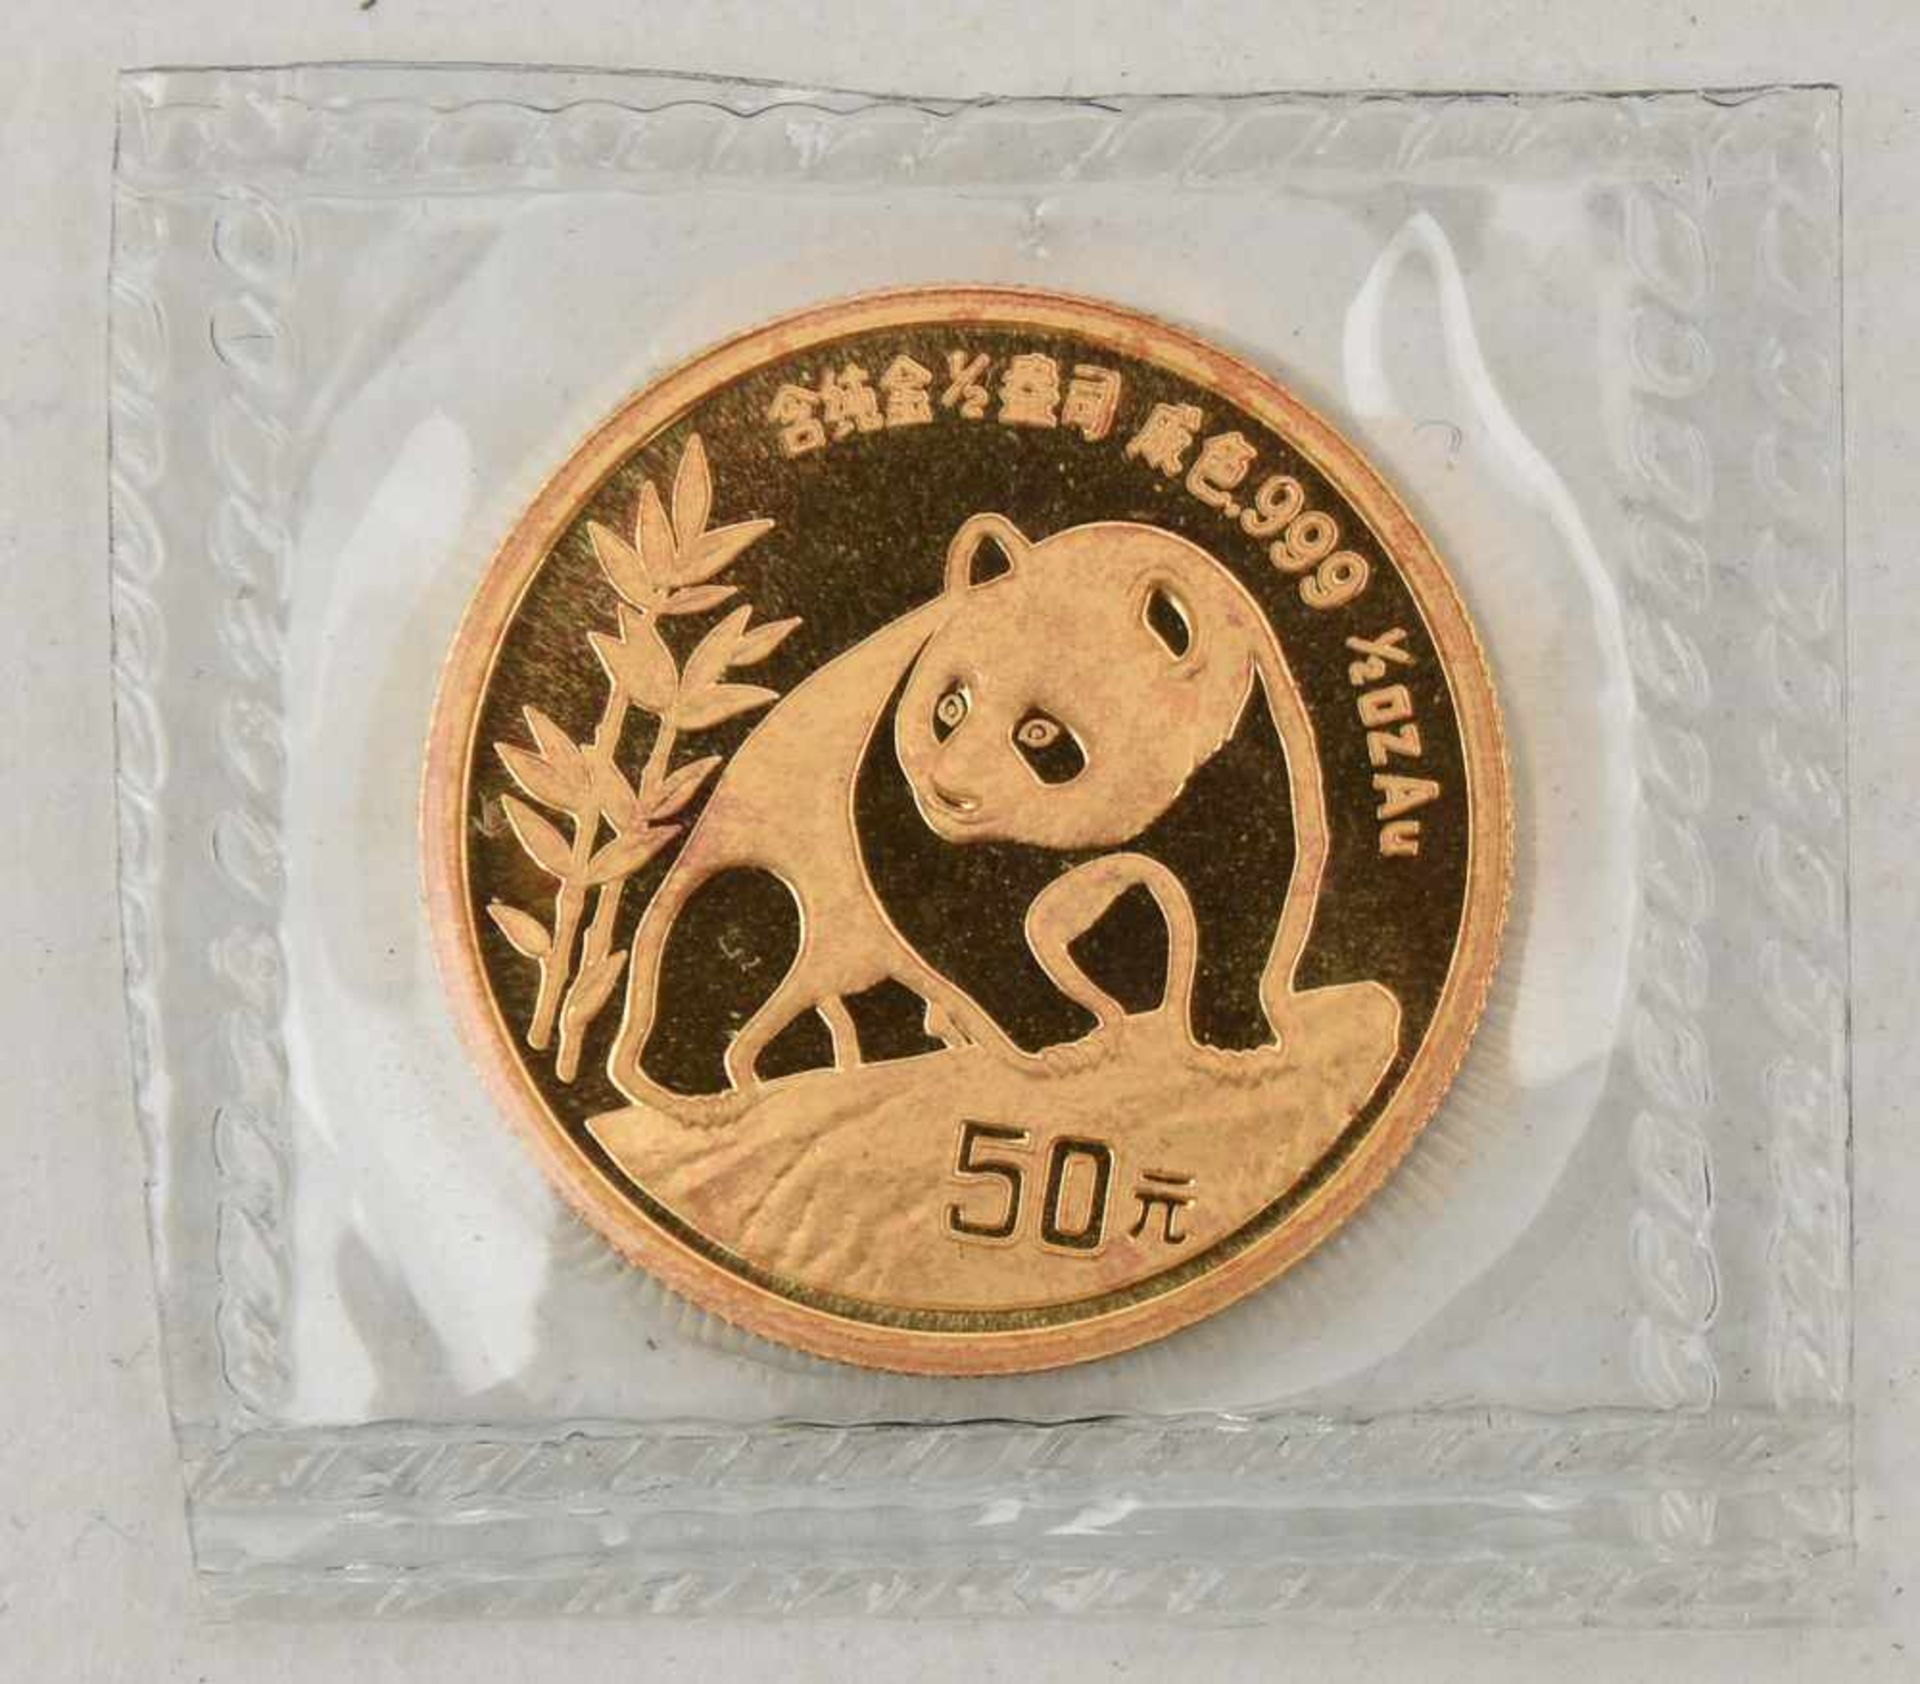 GOLDMÜNZE, China Panda 50 Yuan, 1/2 Unze, 20. Jhd. (15) Gewicht: 15,6 gramm, 999 Gold